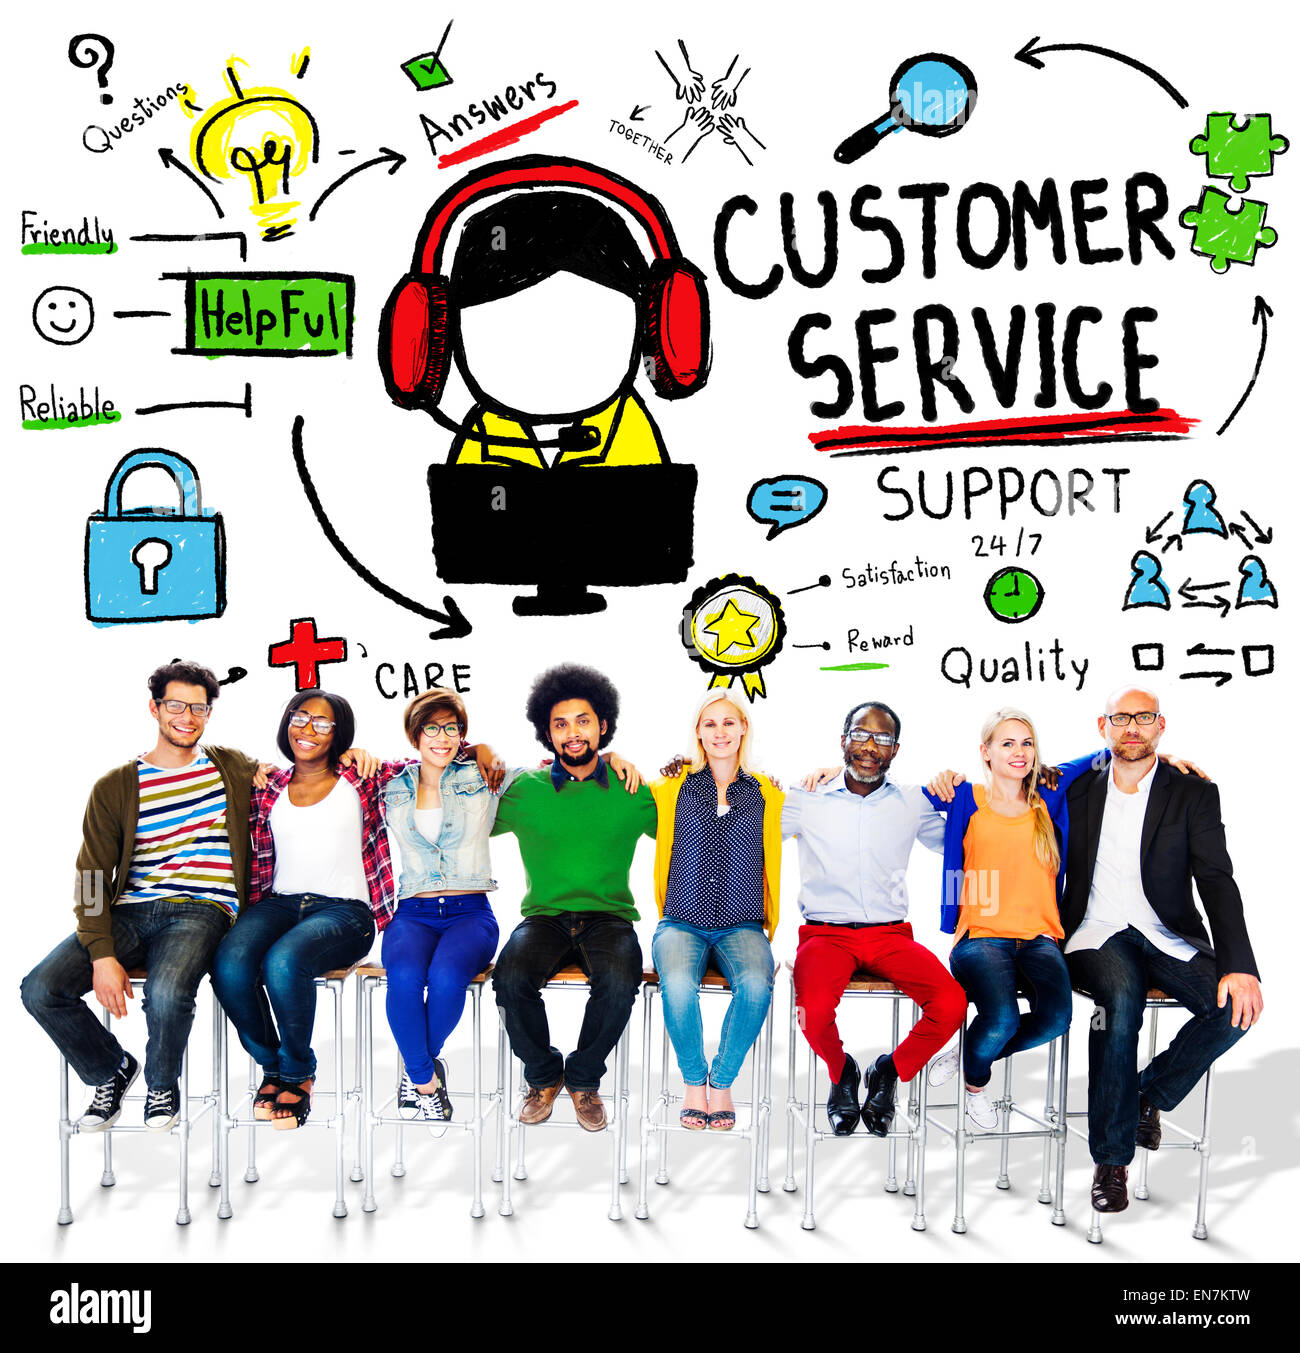 Kunden Service Support Hilfe Service Hilfe Guide-Konzept Stockfoto